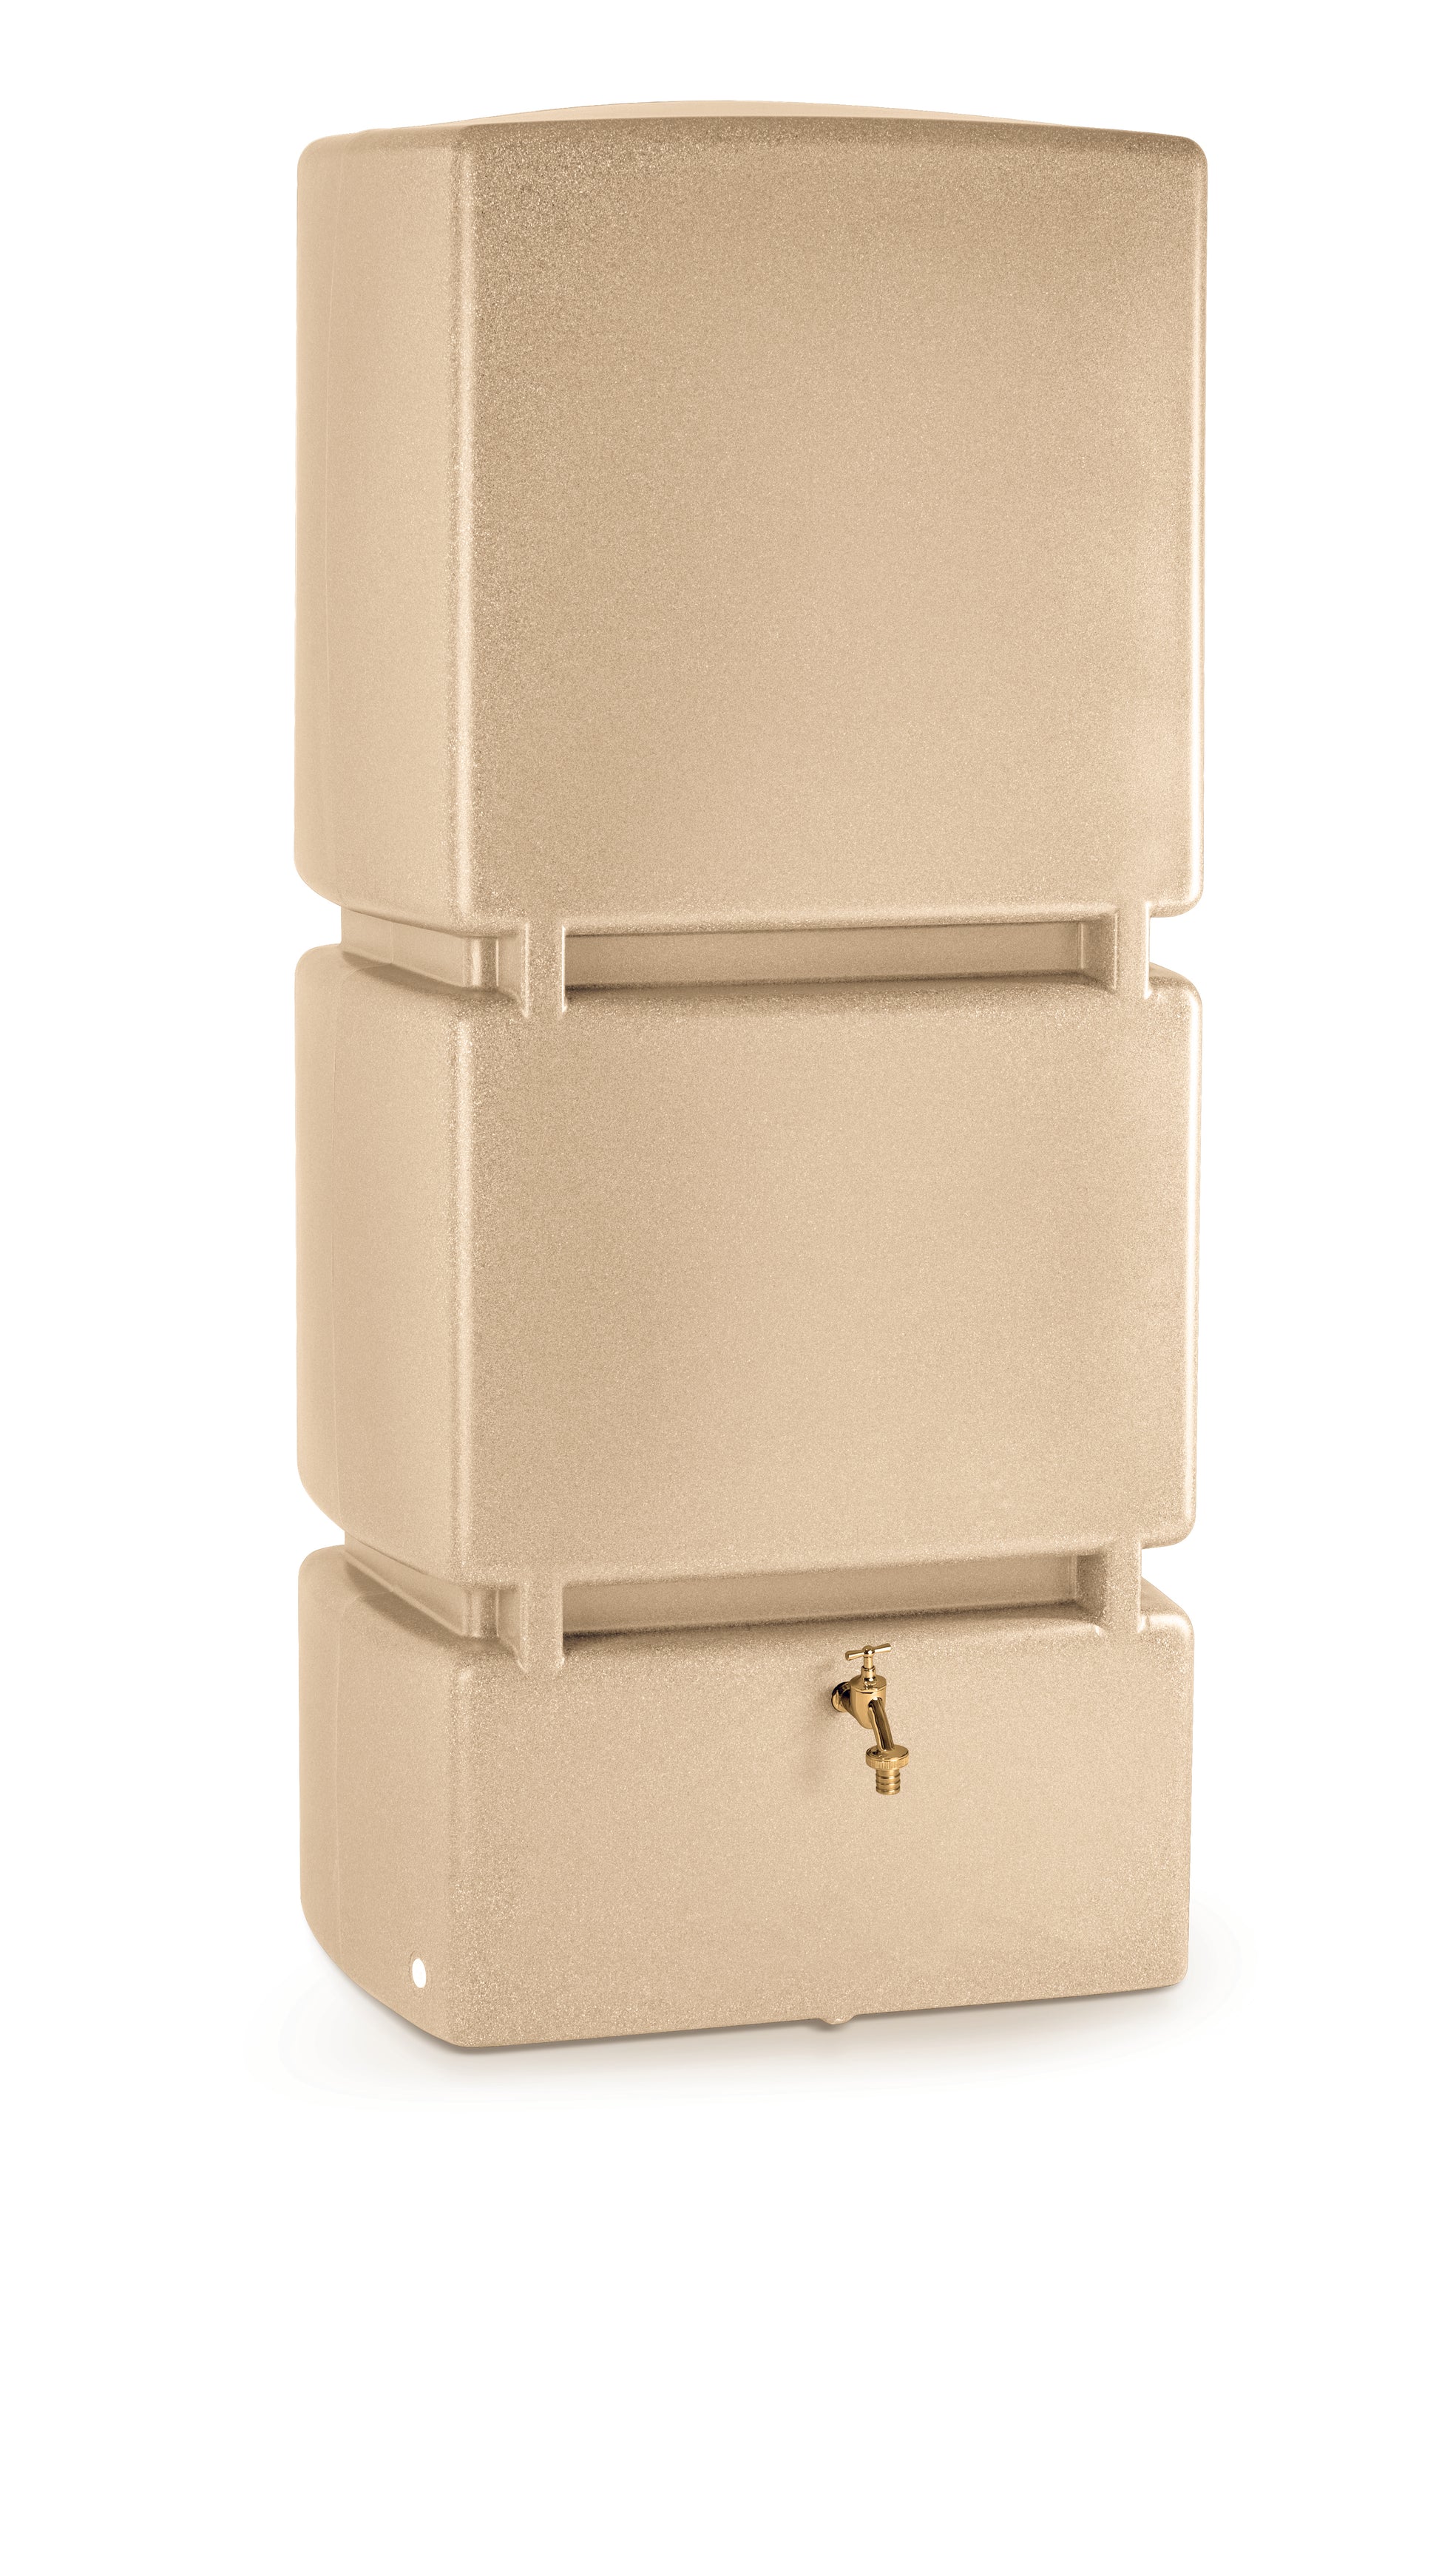 Goldfarbener YourCasa-Wasserspender ohne Wasserkrug, ideal für Nachhaltigkeit.